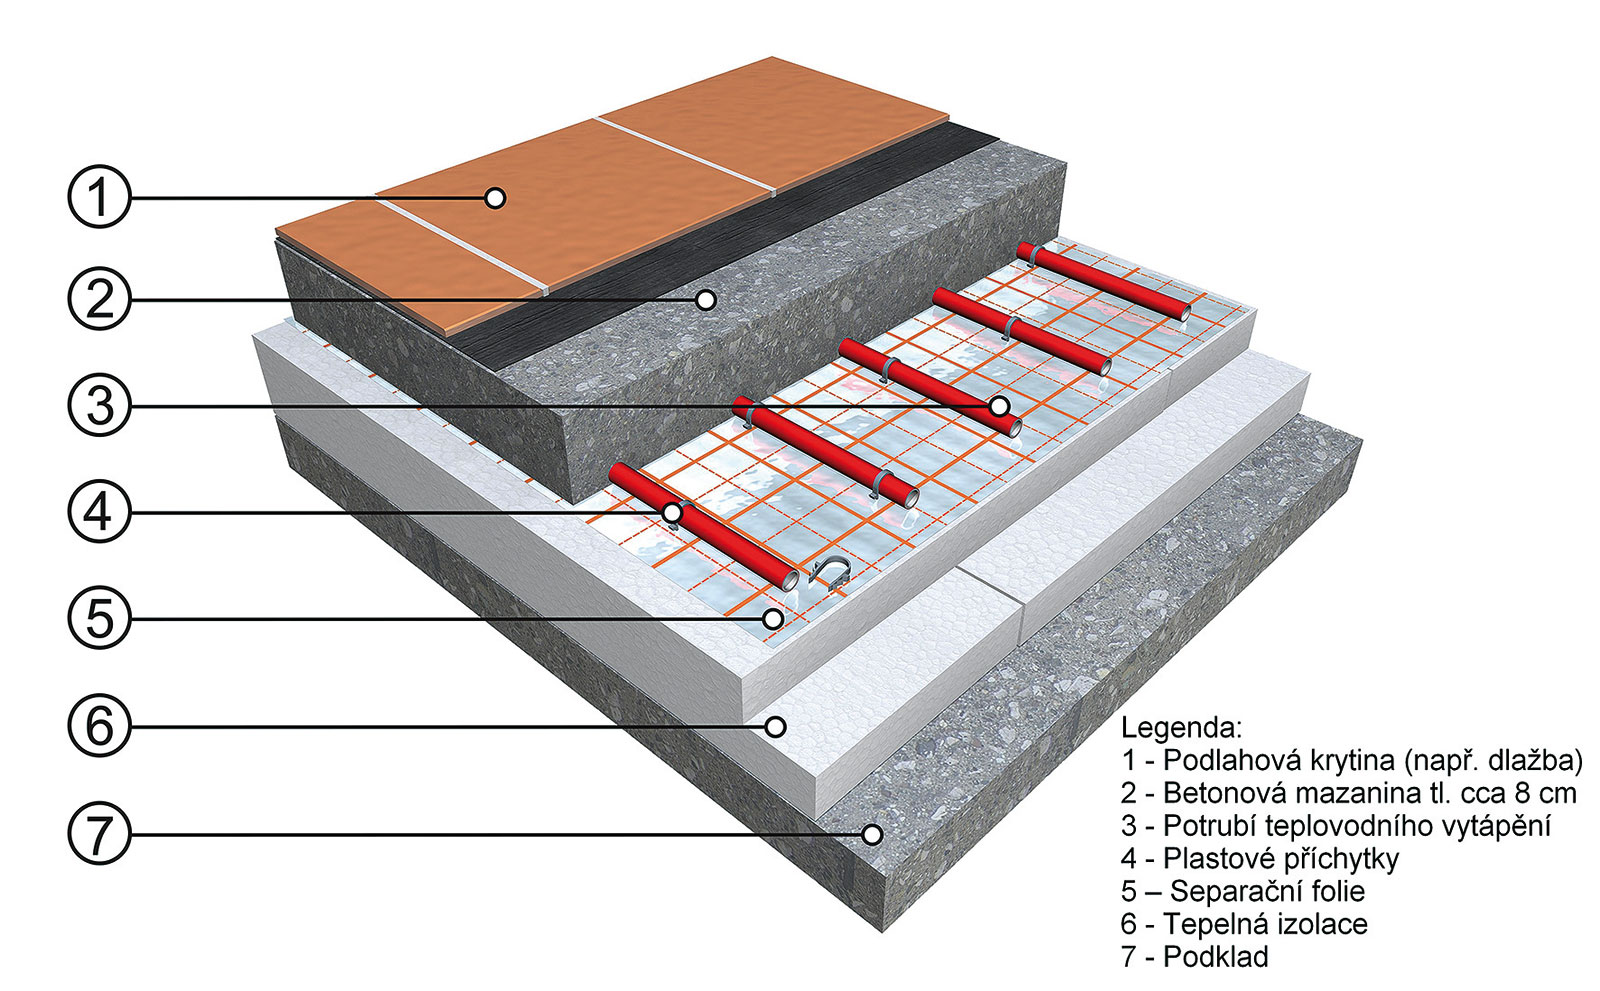 Skladba systému teplovodního vytápění.
1 – podlahová krytina (např. dlažba), 2 – betonová mazanina tl. cca 8 cm, 3 – potrubí teplovodního vytápění, 4 – plastové příchytky, 5 – separační fólie, 6 – tepelná izolace, 7 – podklad